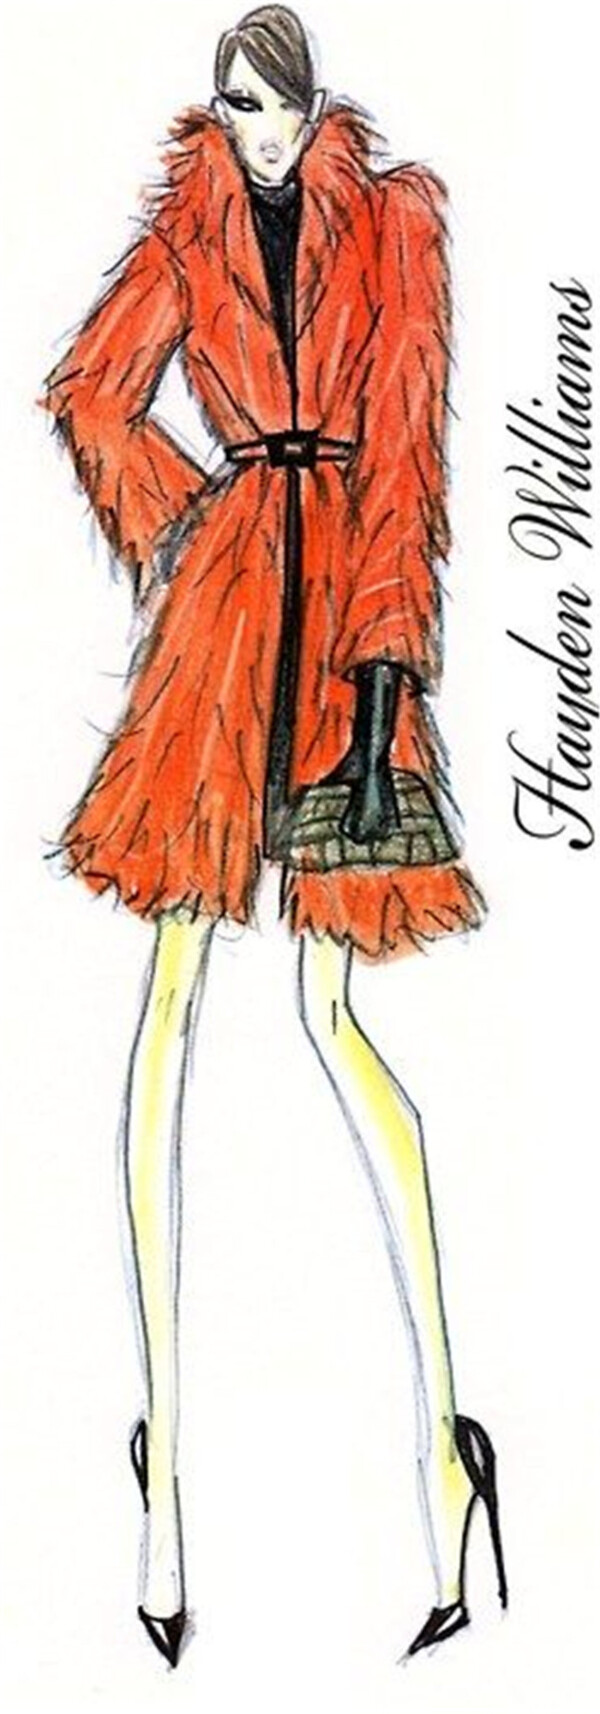 橙色毛绒外套设计图